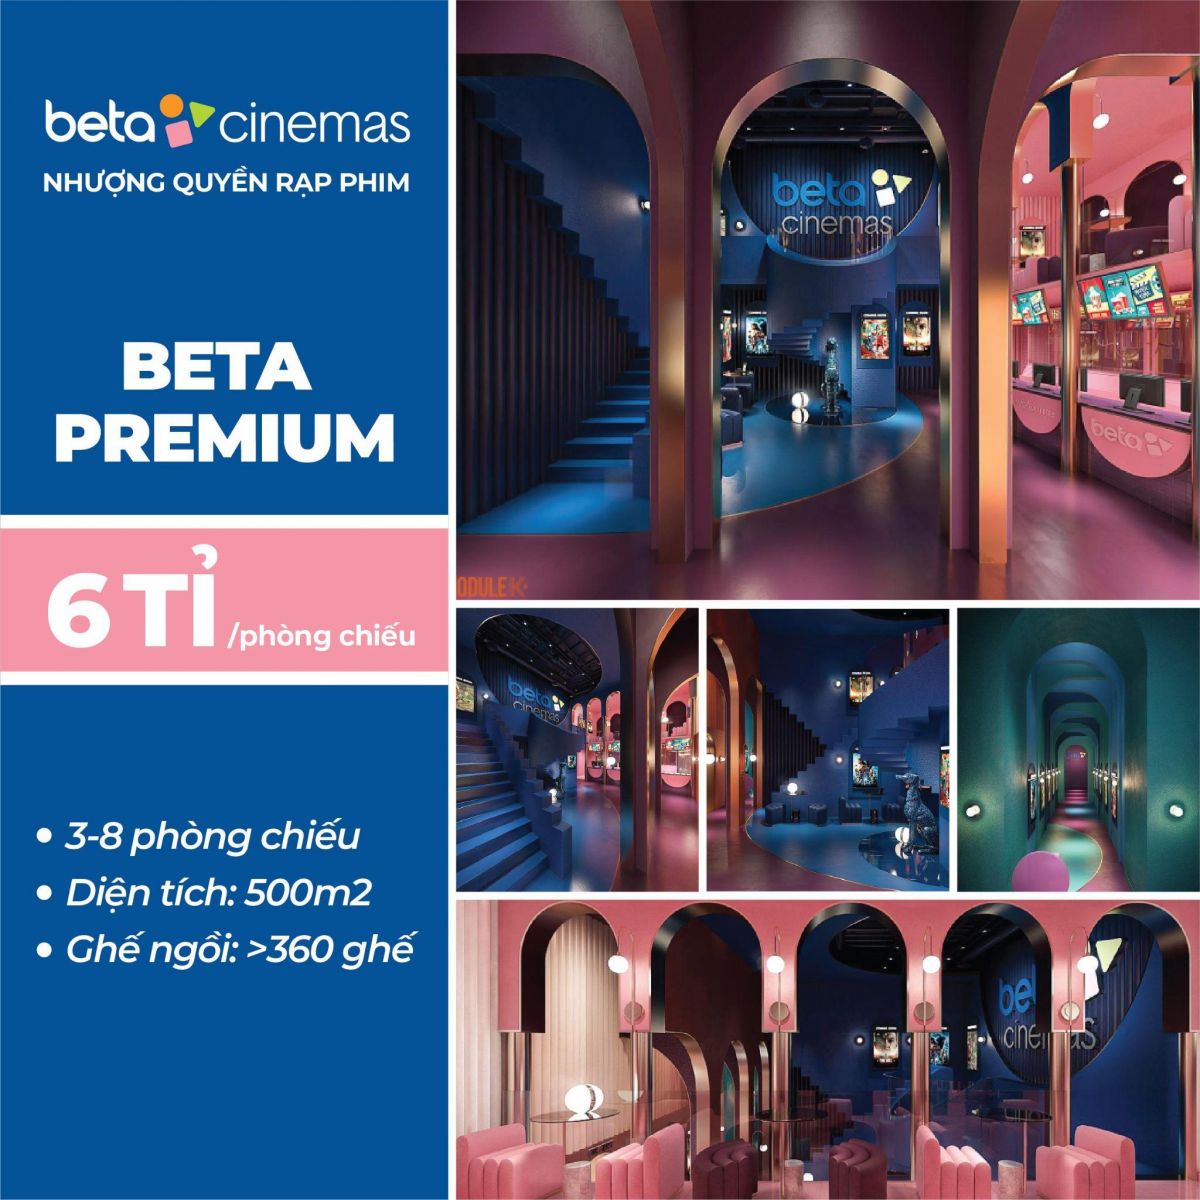 Beta Premium: Thiết kế sang trọng, chất lượng đẳng cấp